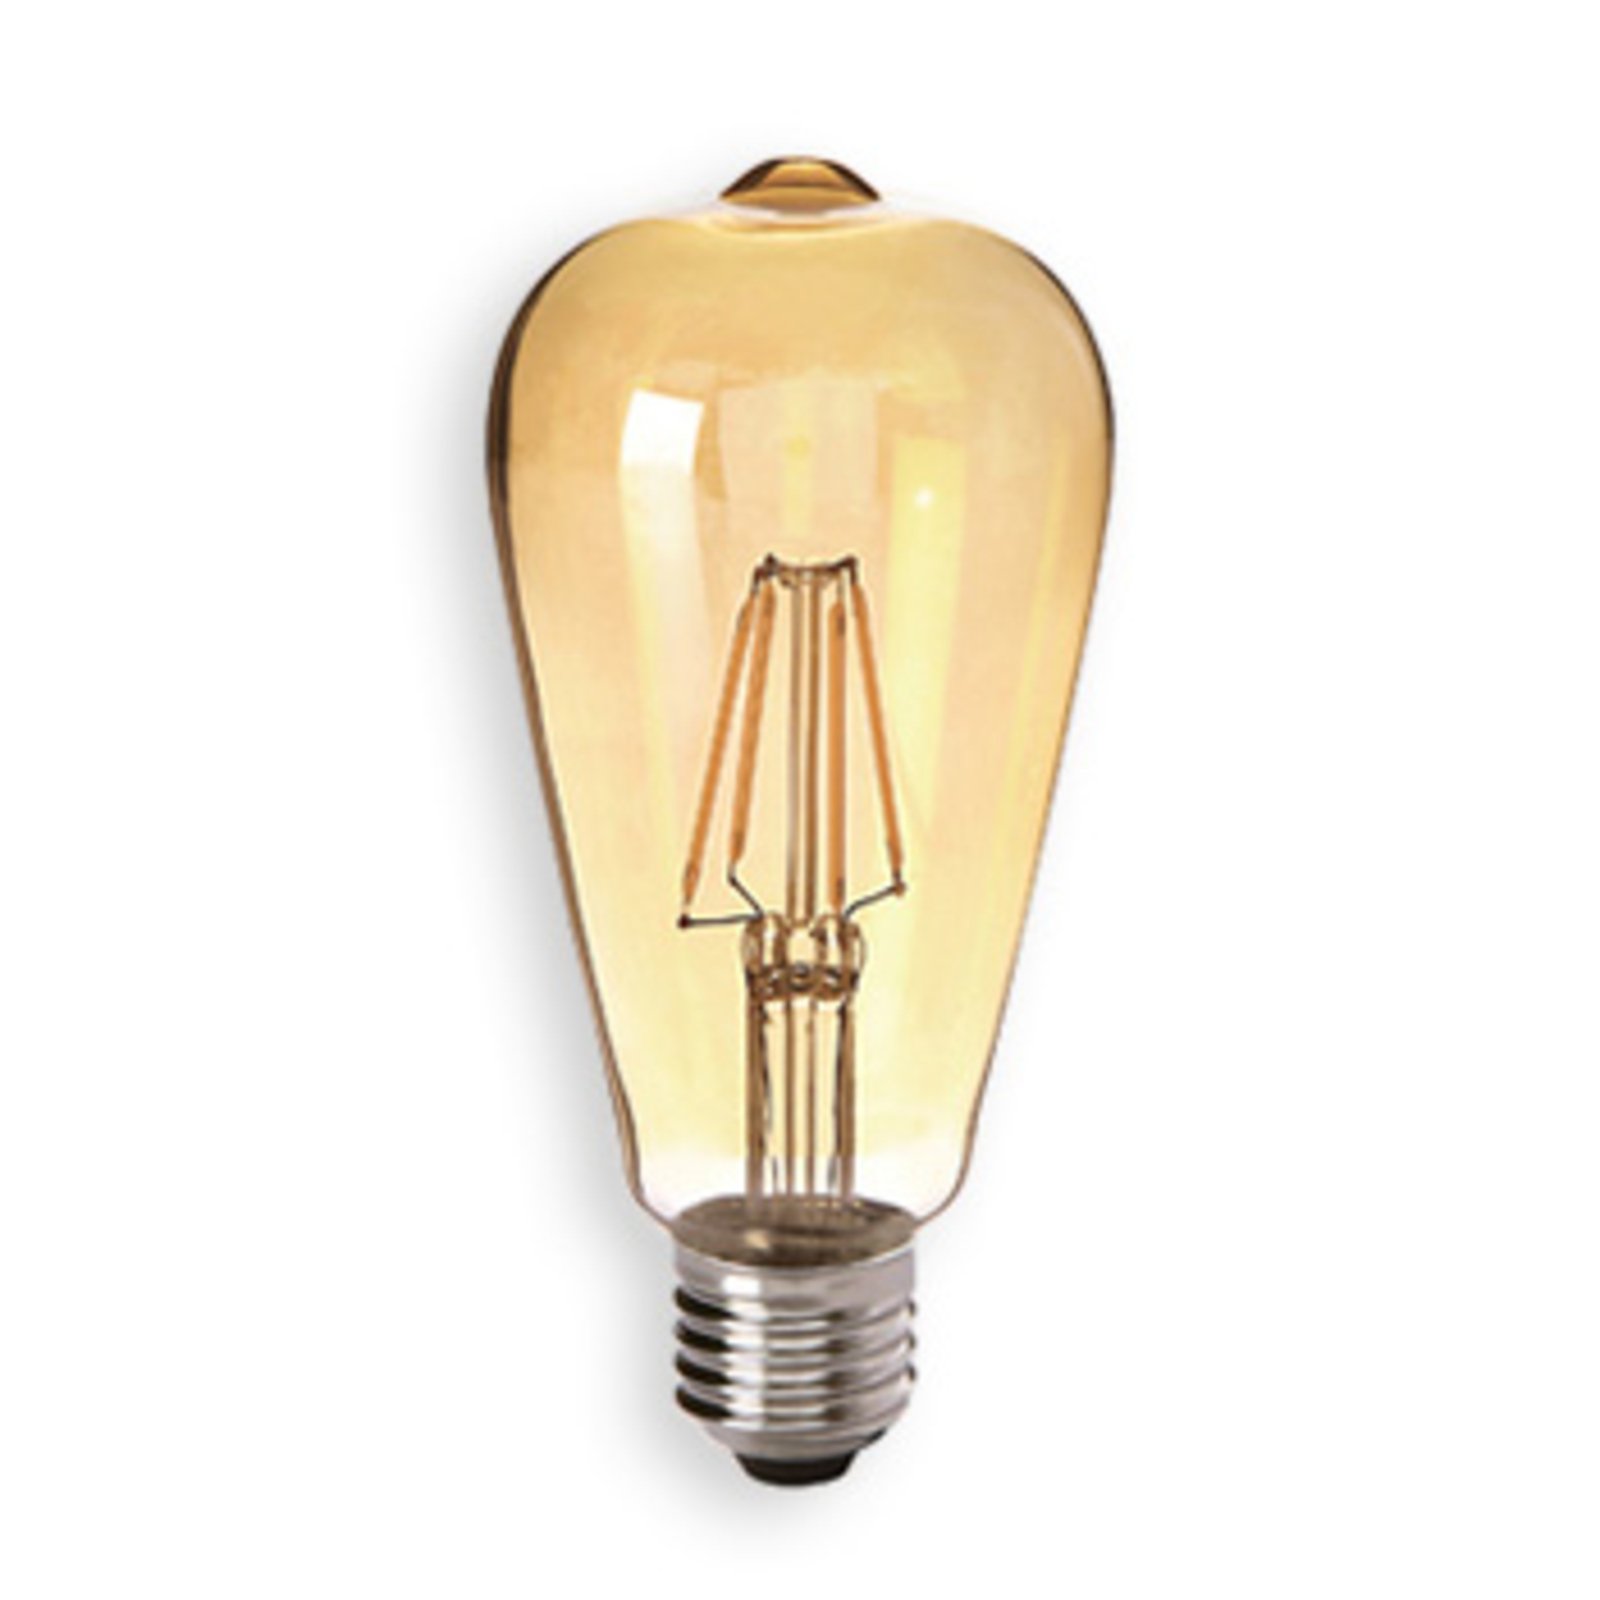 E27 4W 825 LED ballonlamp goud, helder